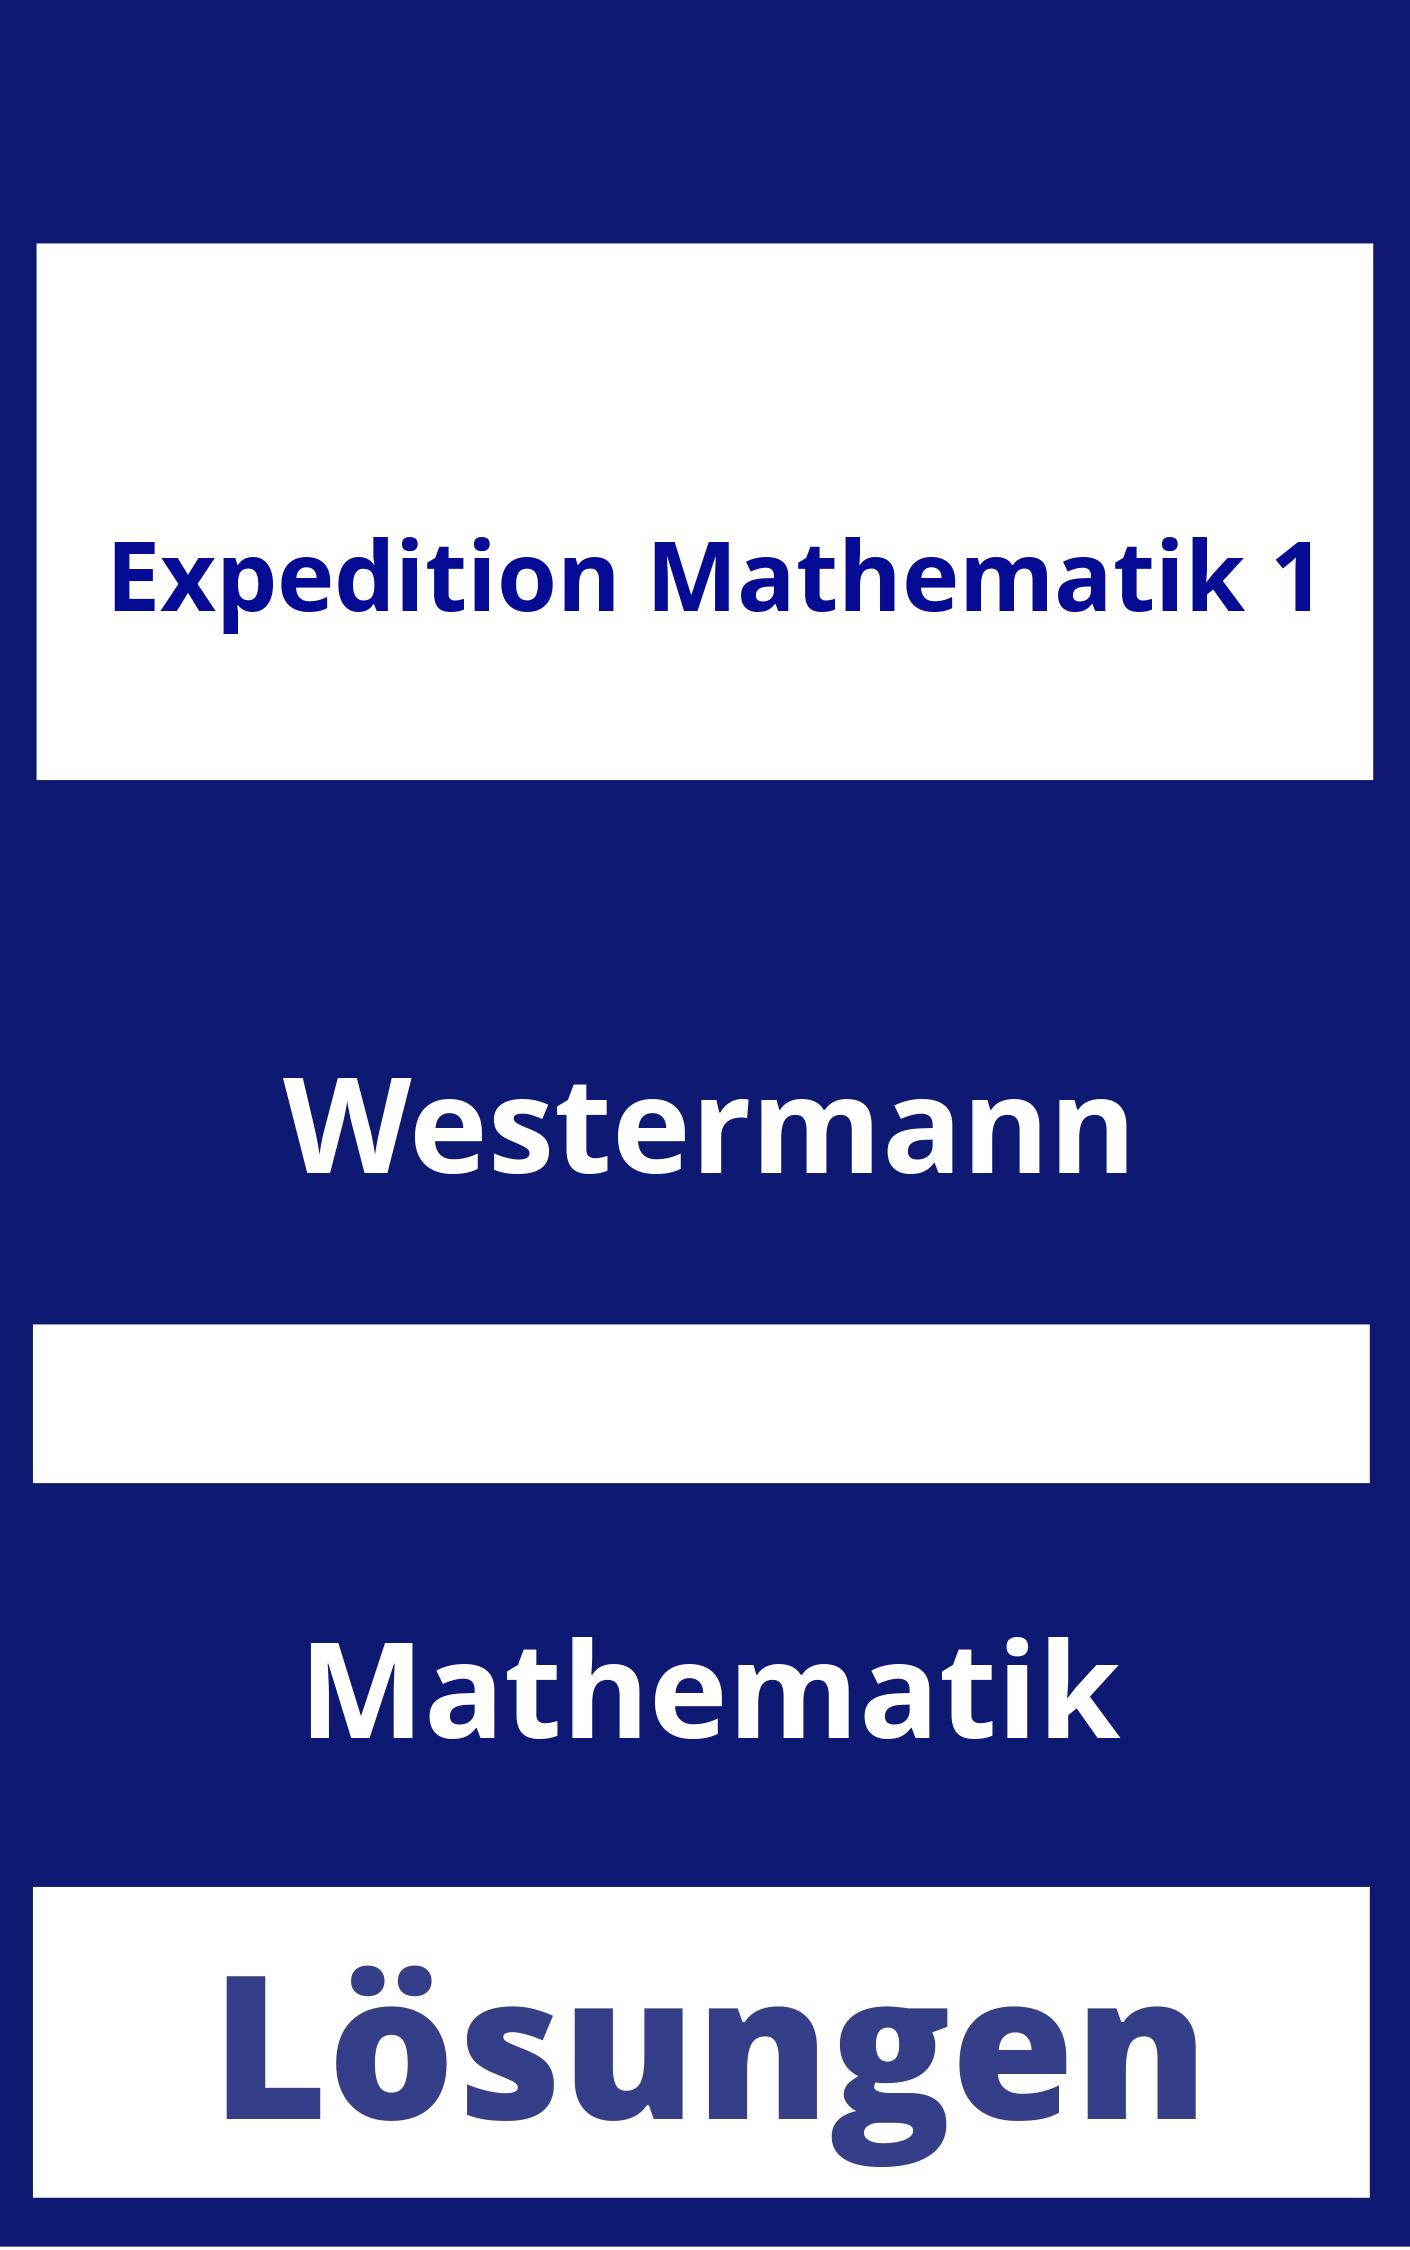 Expedition Mathematik 1